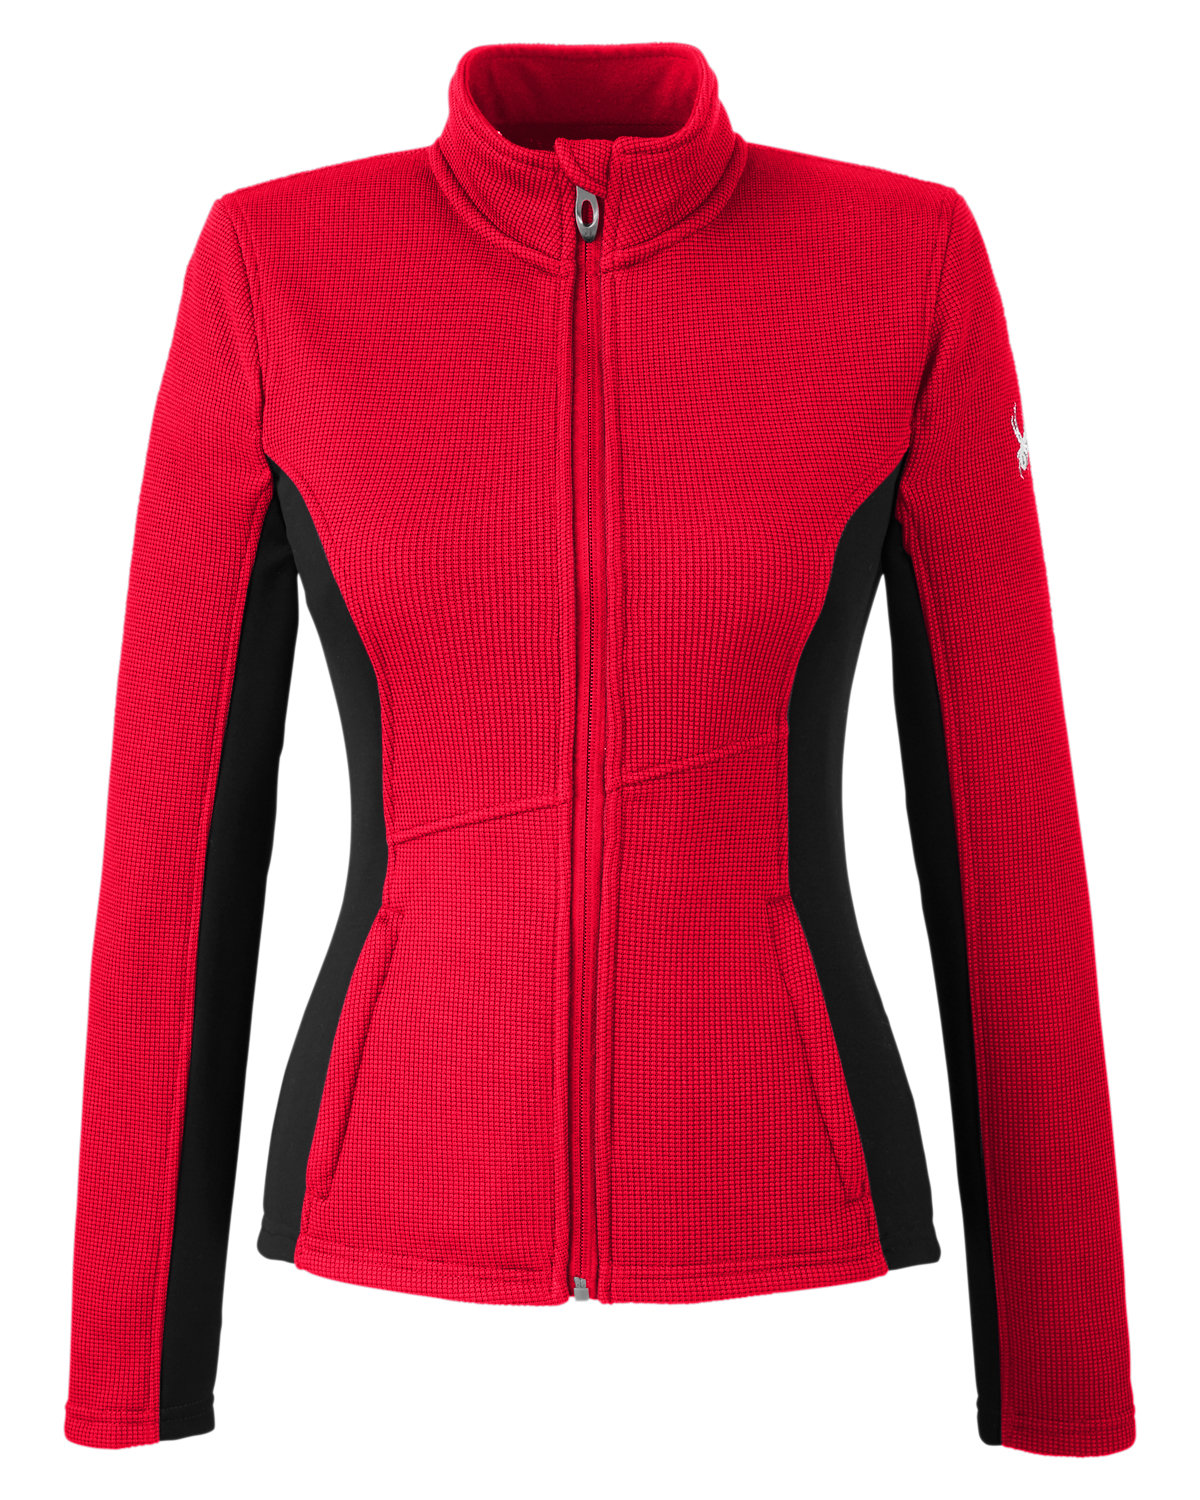 Spyder Ladies' Constant Full-Zip Sweater Fleece Jacket –